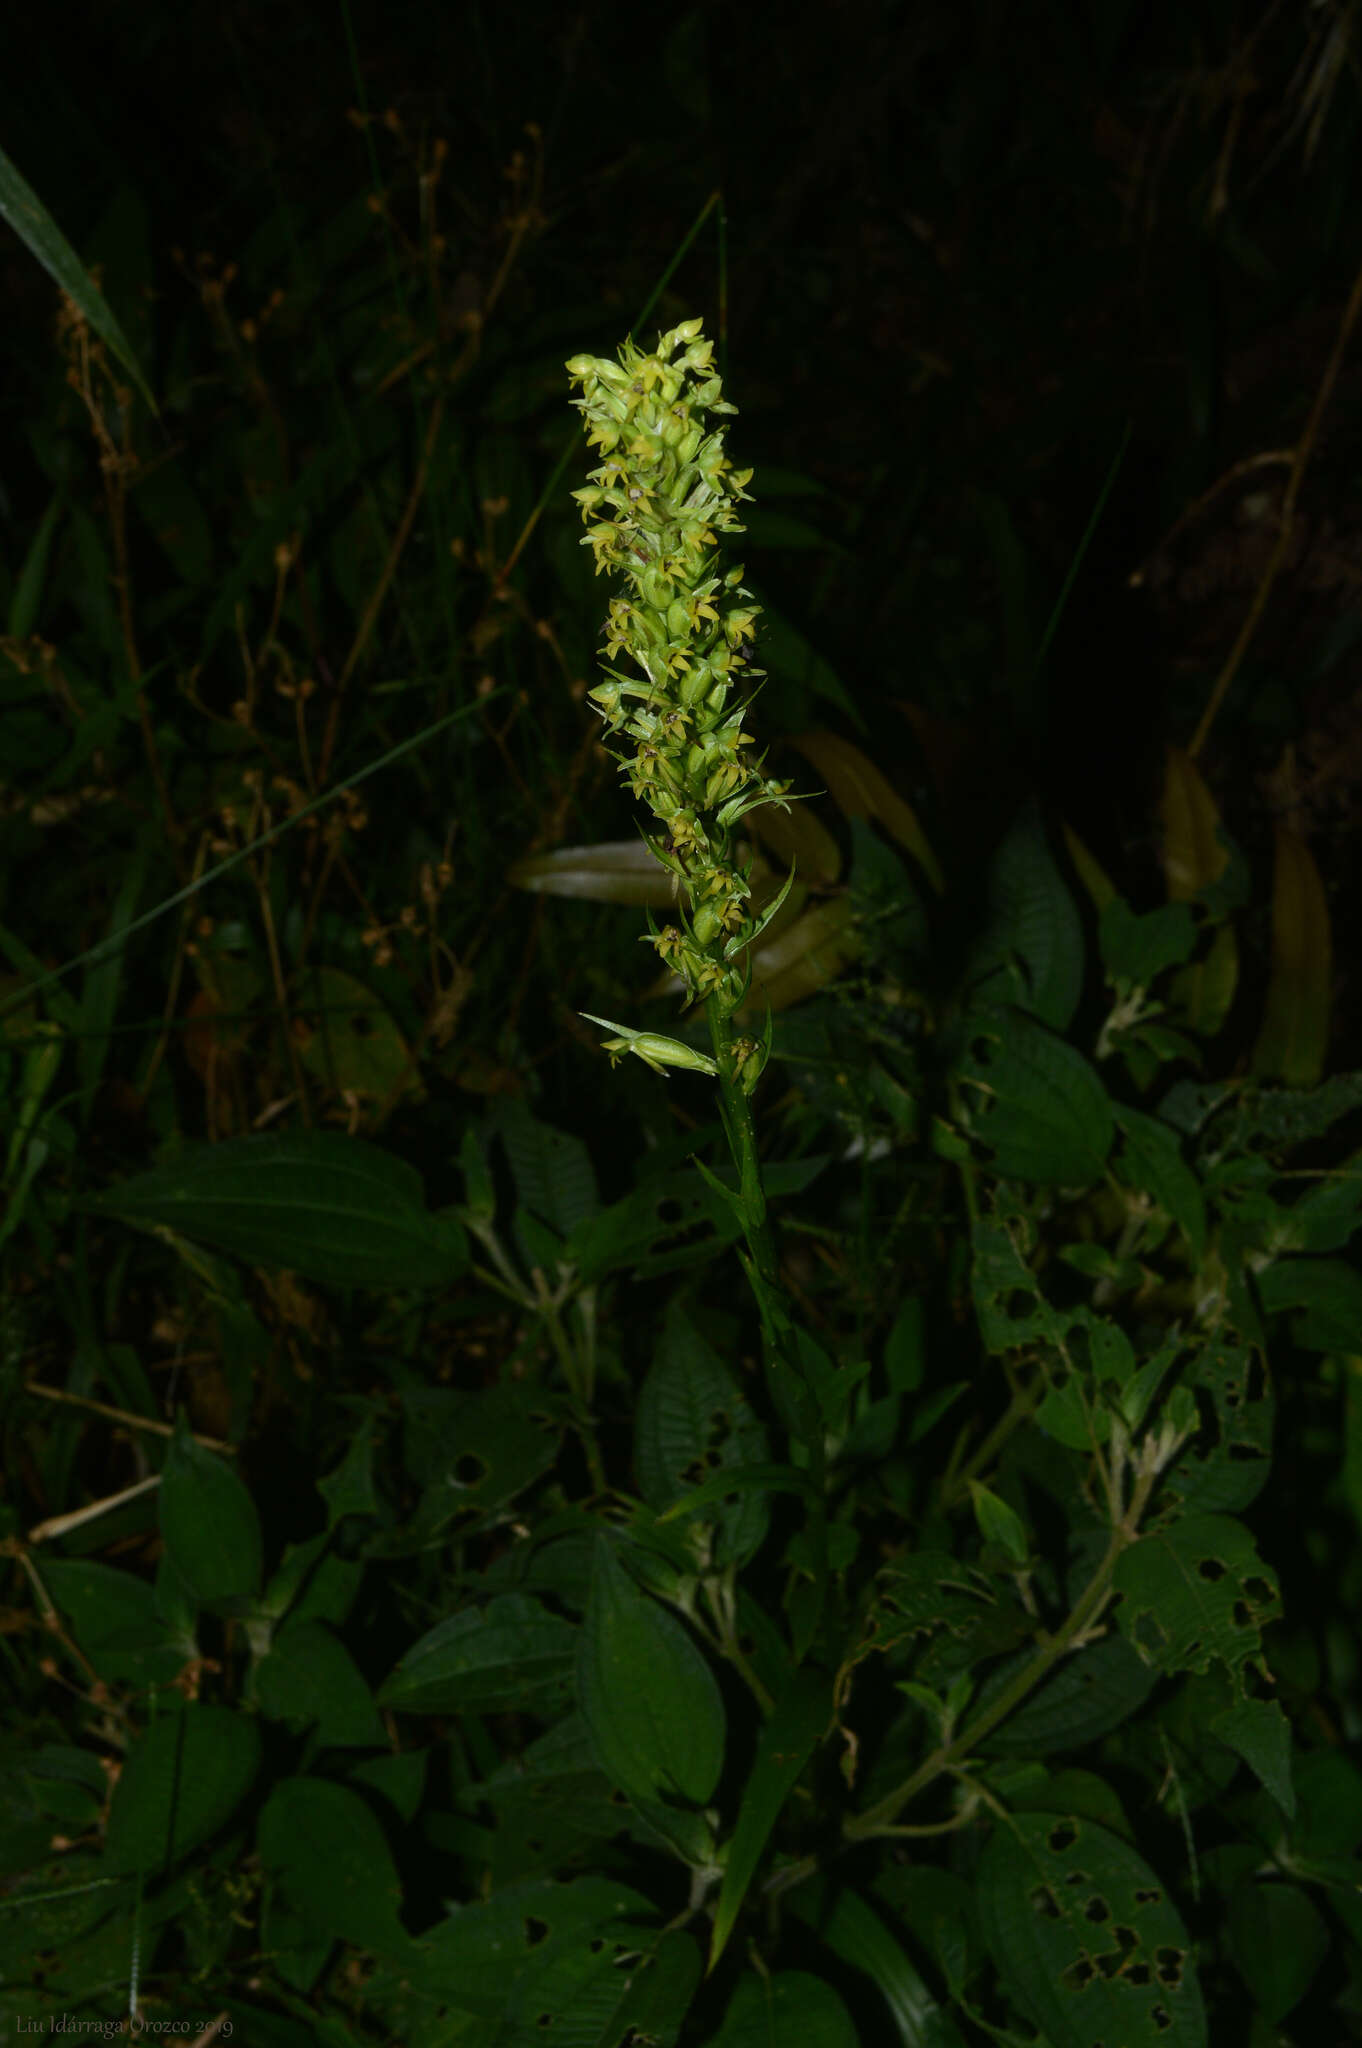 Image of Habenaria parviflora Lindl.